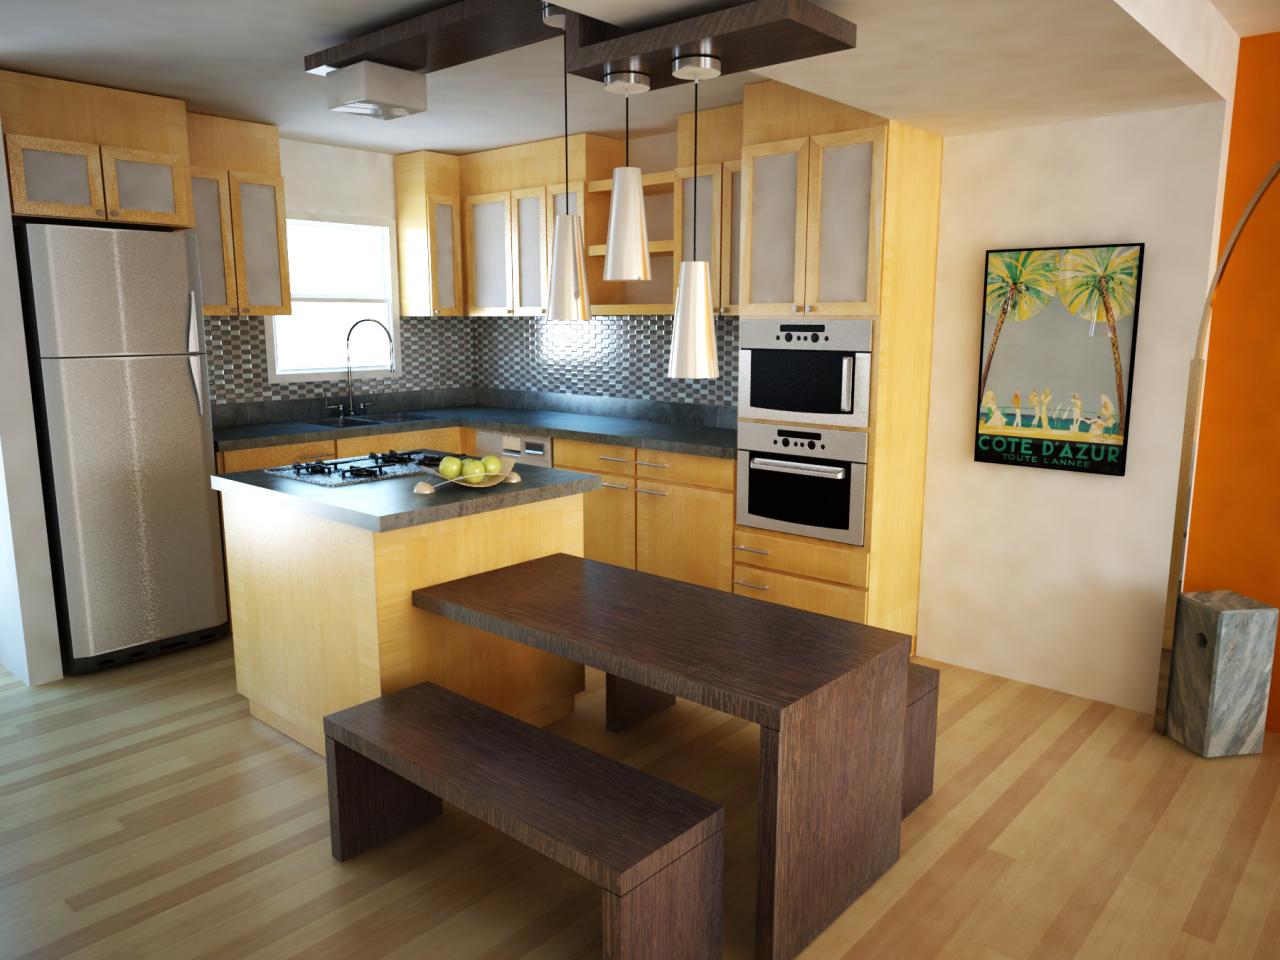 12 ترفند آسان و شیک برای طراحی دکوراسیون داخلی آشپزخانه کوچک آپارتمانی